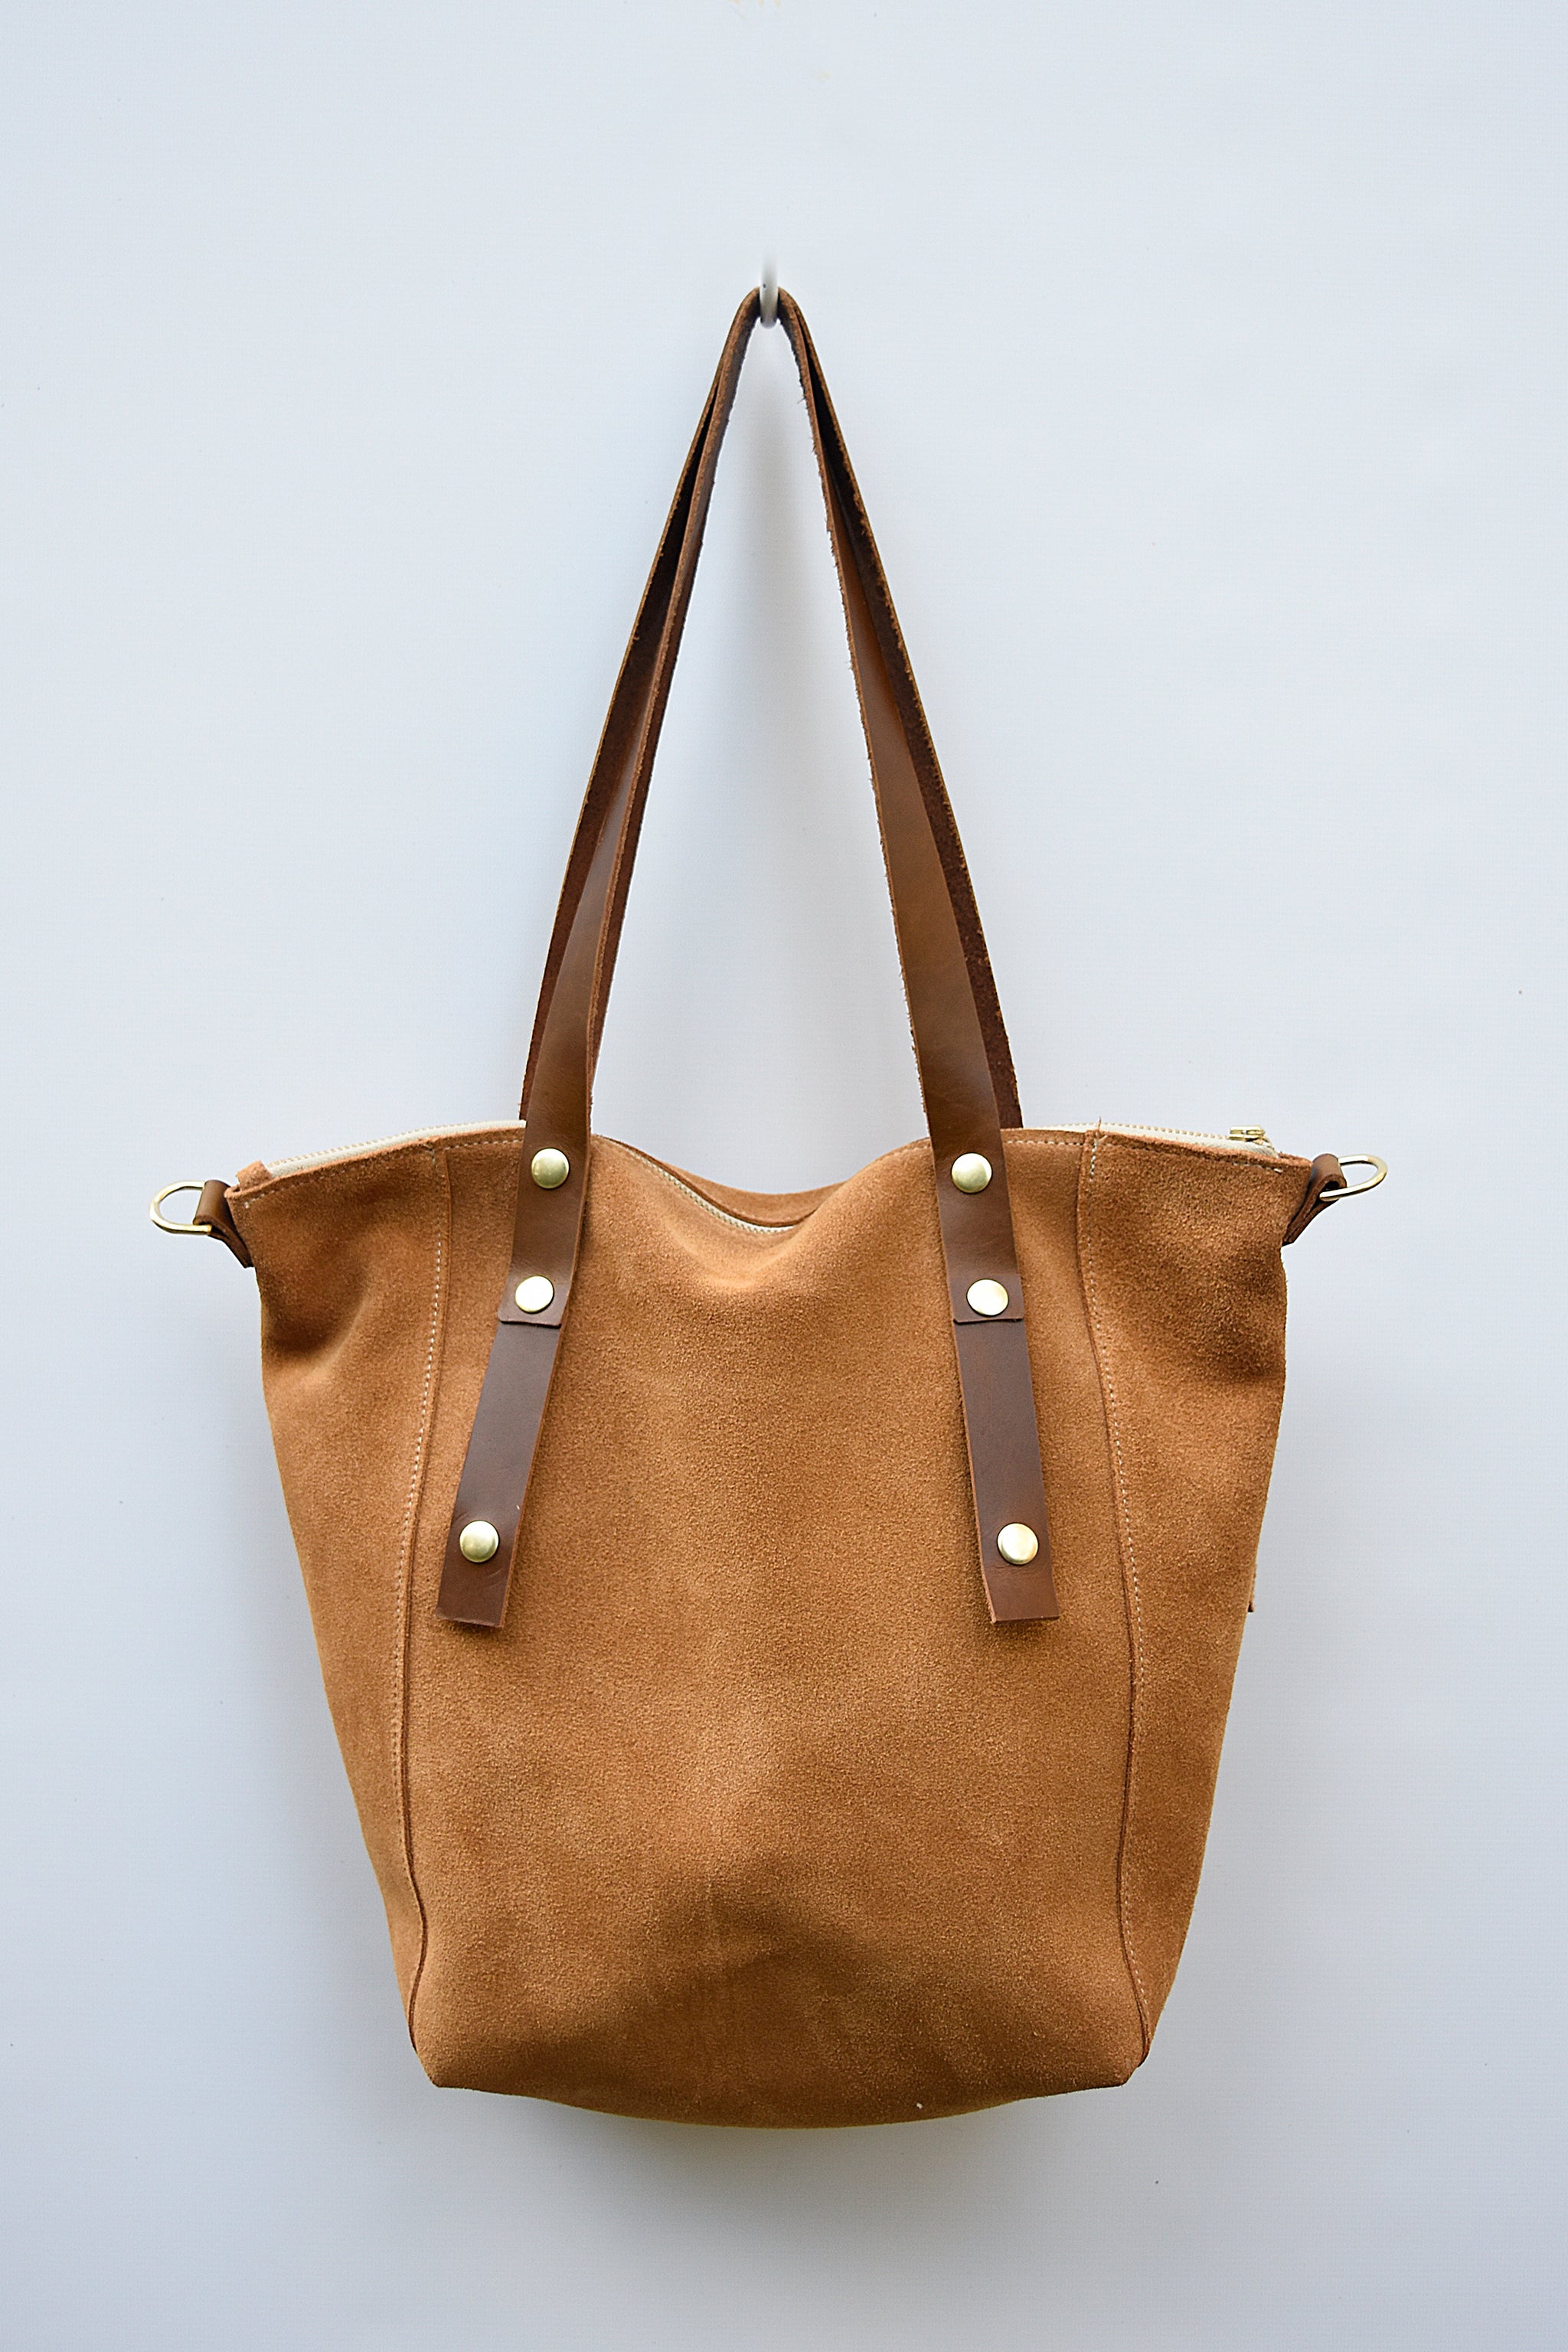 Suede Shoulder Bag Green Leather Shopper Bag Slouch Bag 